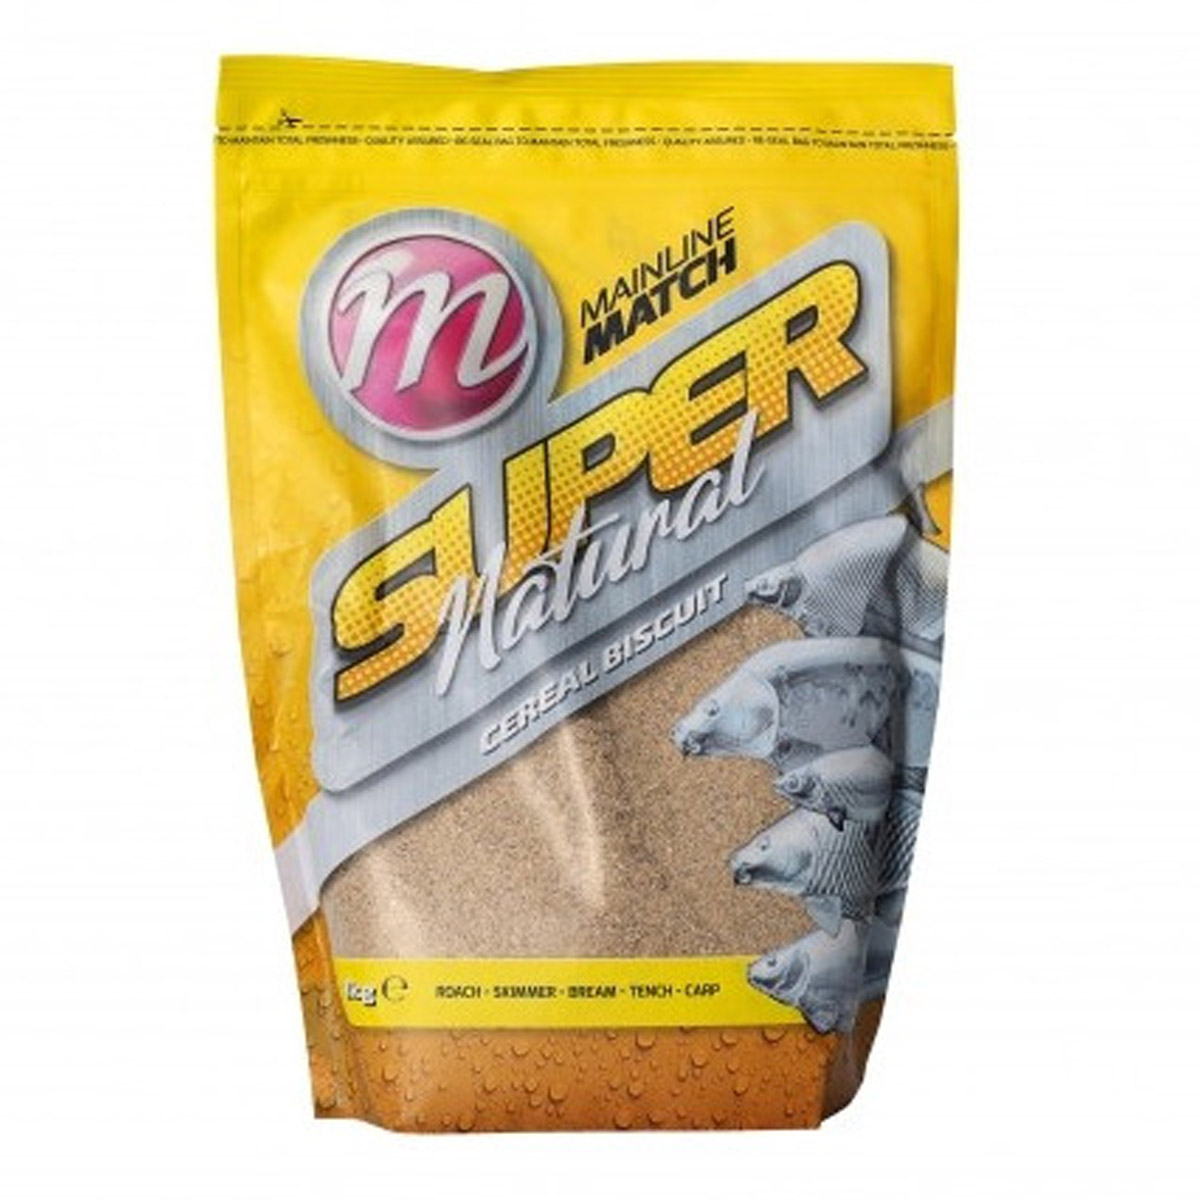 Mainline Match Super Natural Cereal Biscuit Mix 1 KG